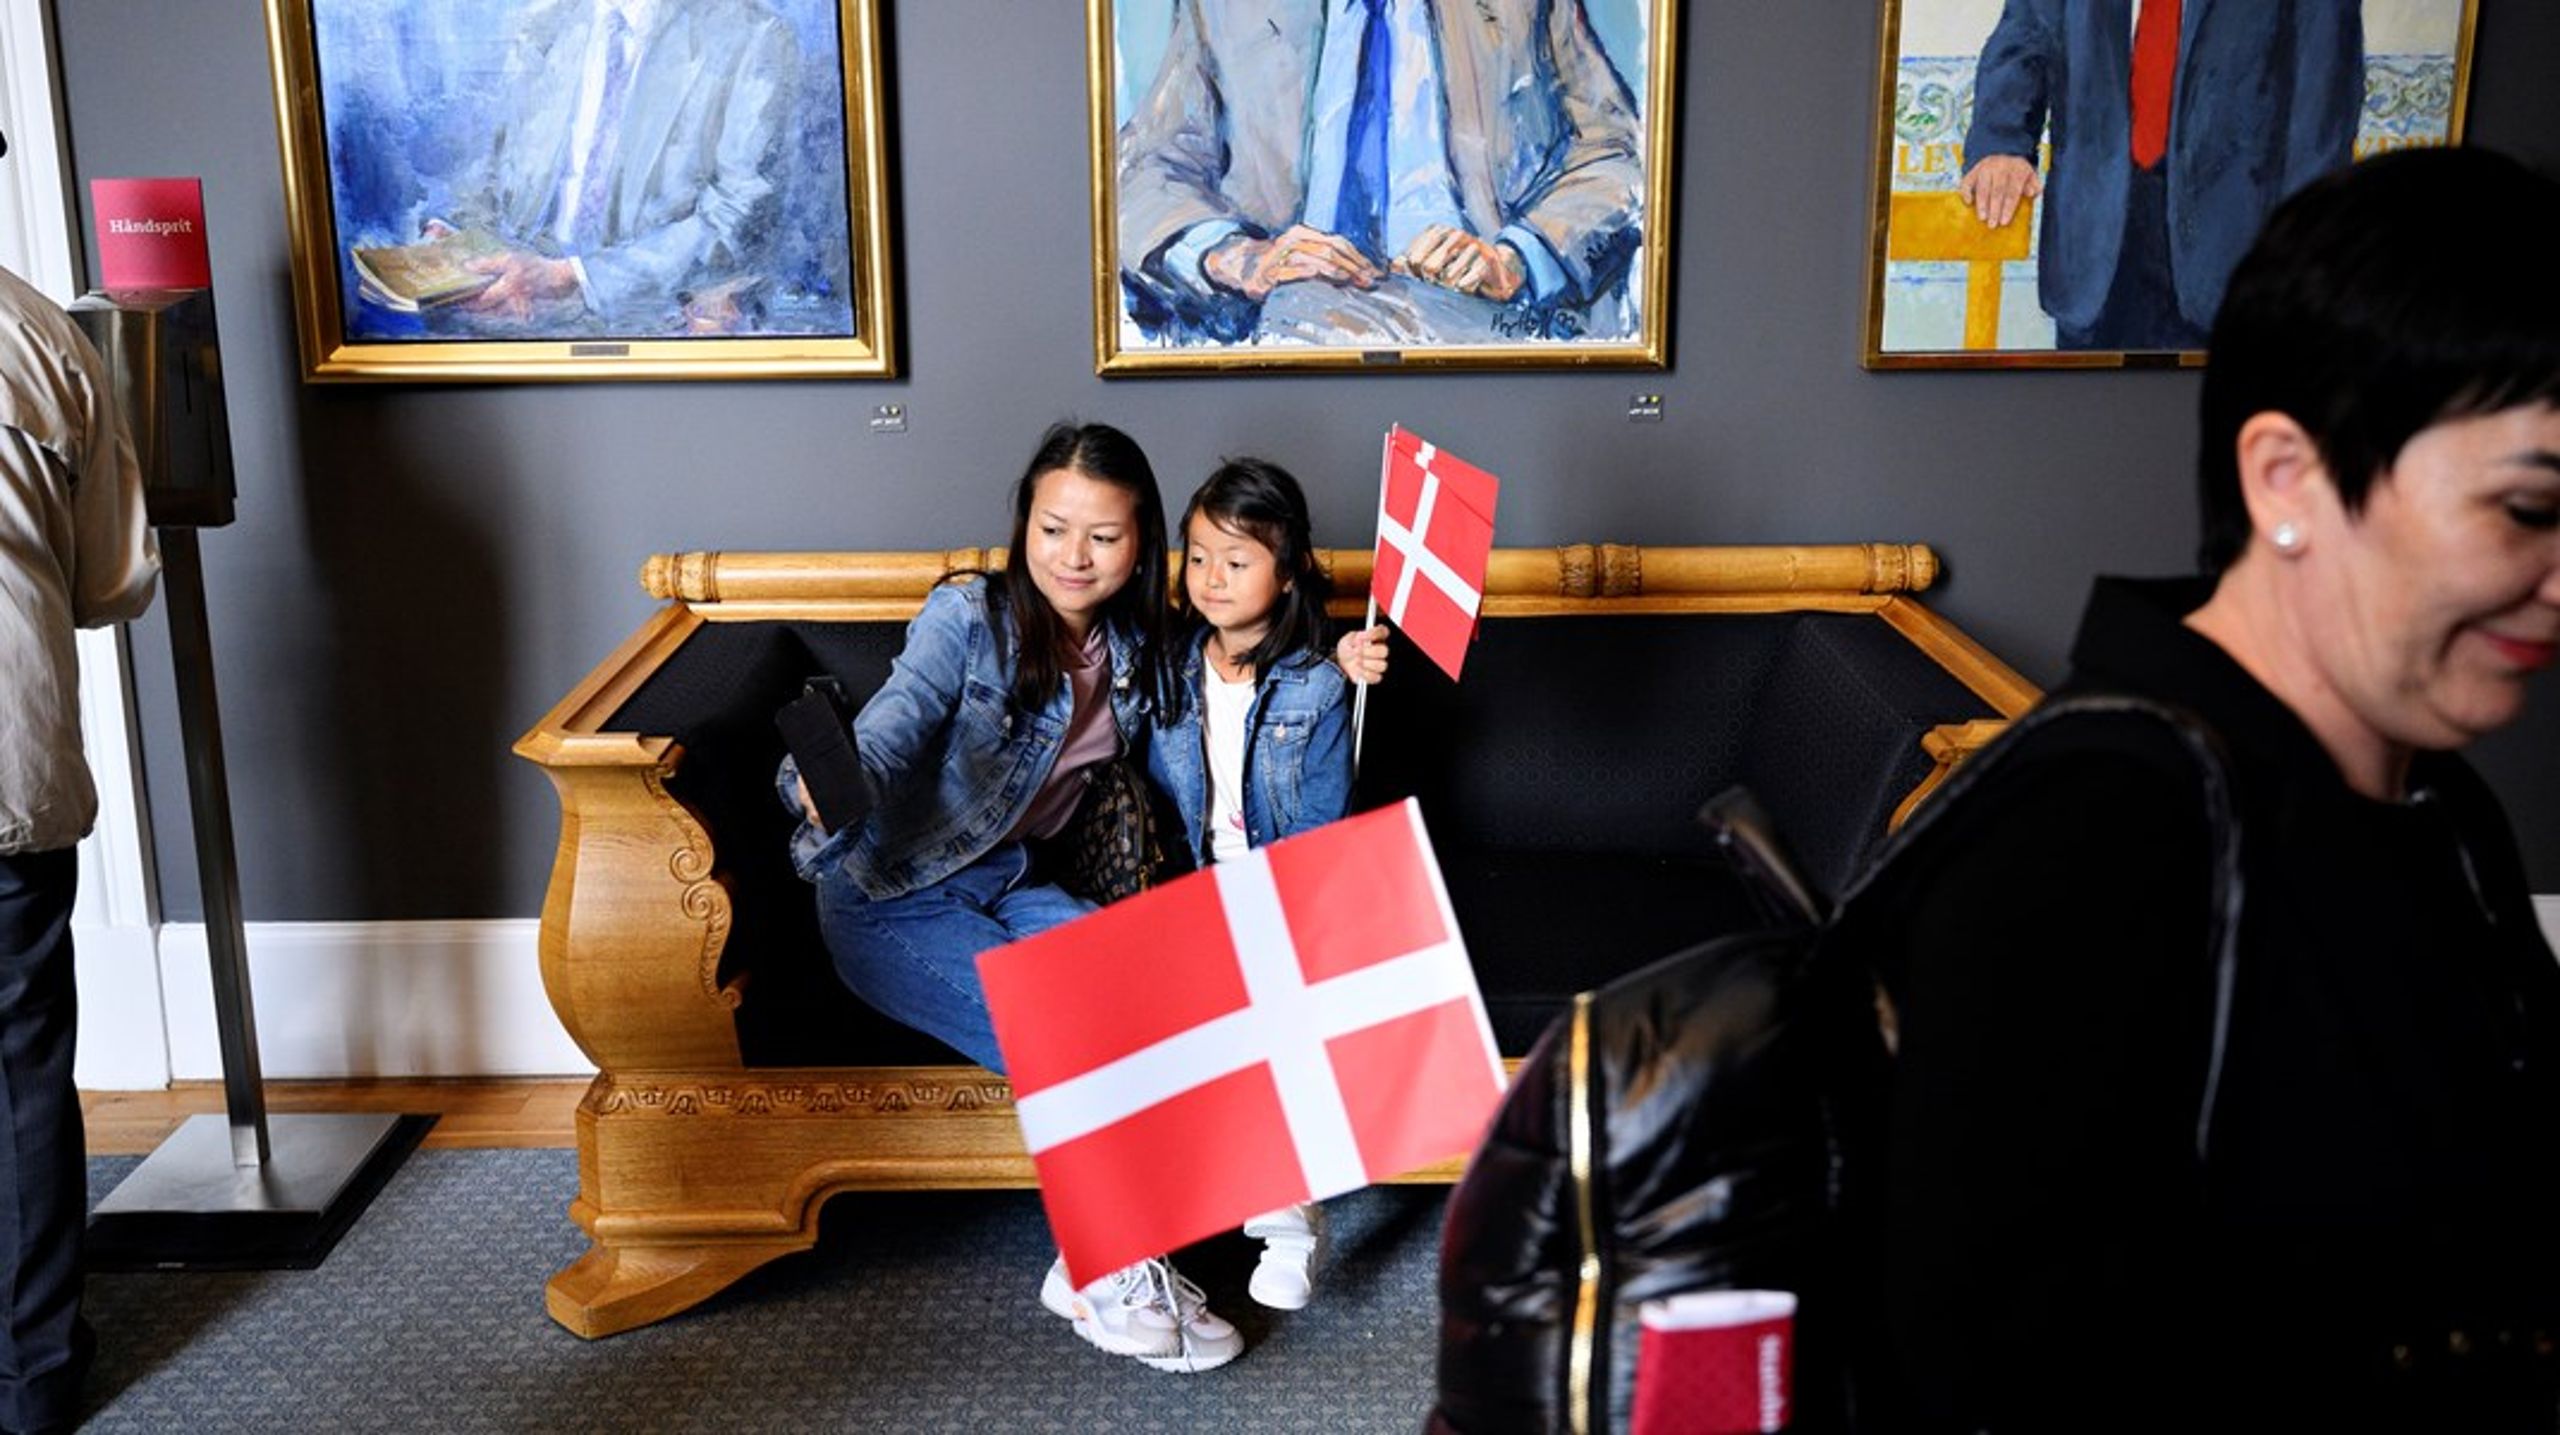 Det er en pinlig ordning, at det er danskere politikere, der er med til at træffe afgørelser om statsborgskab. Det giver nemlig risiko for diskriminerende afgørelser, skriver Eva Smith.